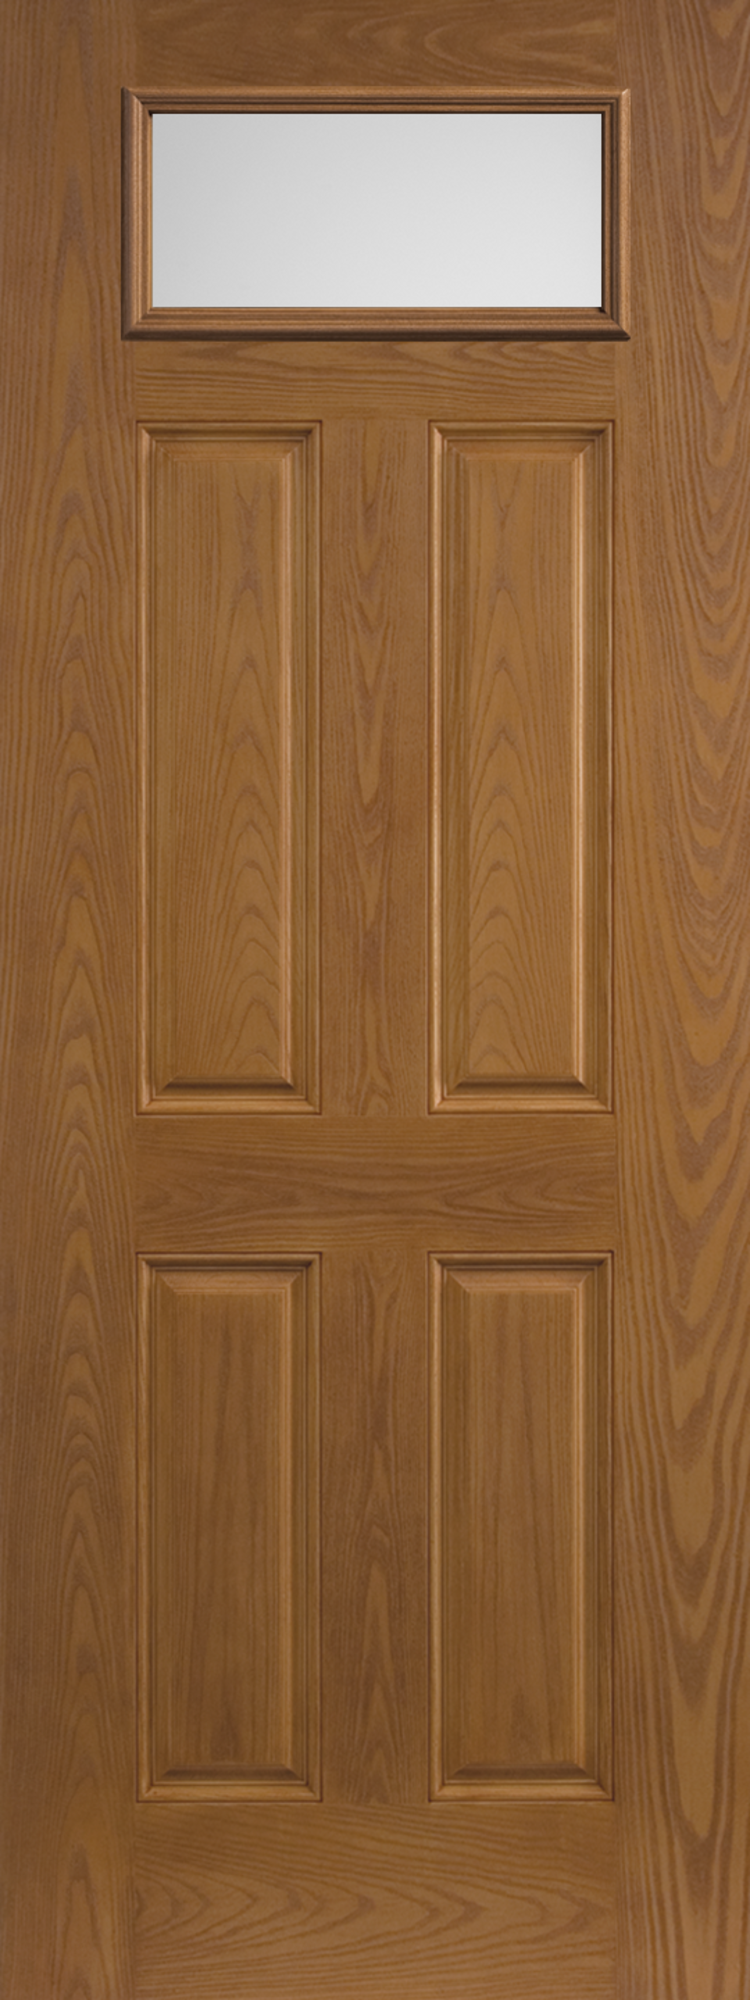 BLT-228-140-4, Belleville Oak Textured 4 Panel Door Rectangle Lite with ...